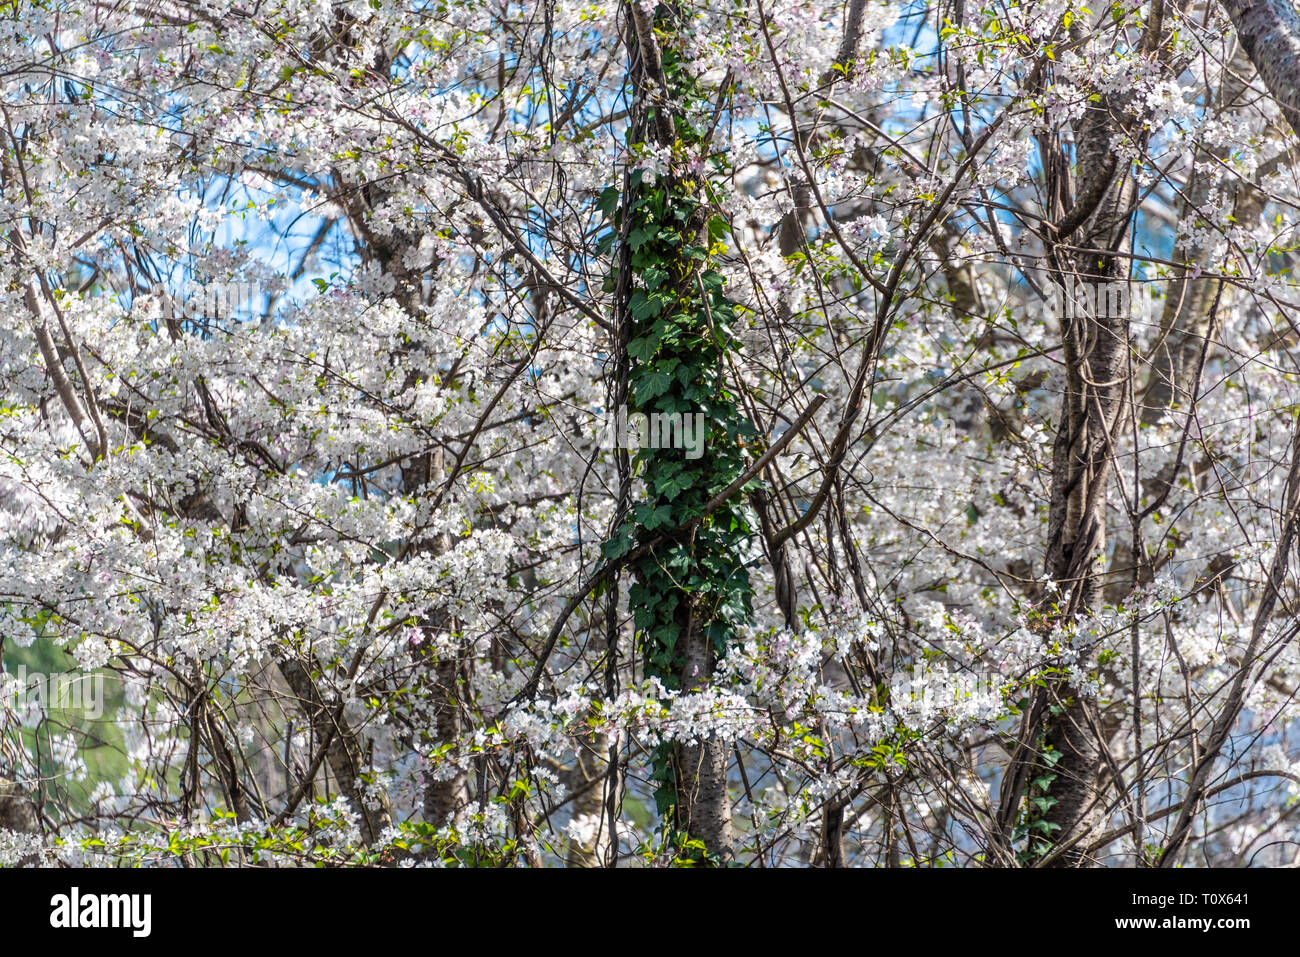 Le lierre grimpant un tronc d'arbre au milieu de fleurs de cerisier blanc sur un beau jour de printemps dans la région métropolitaine d'Atlanta, Géorgie. (USA) Banque D'Images